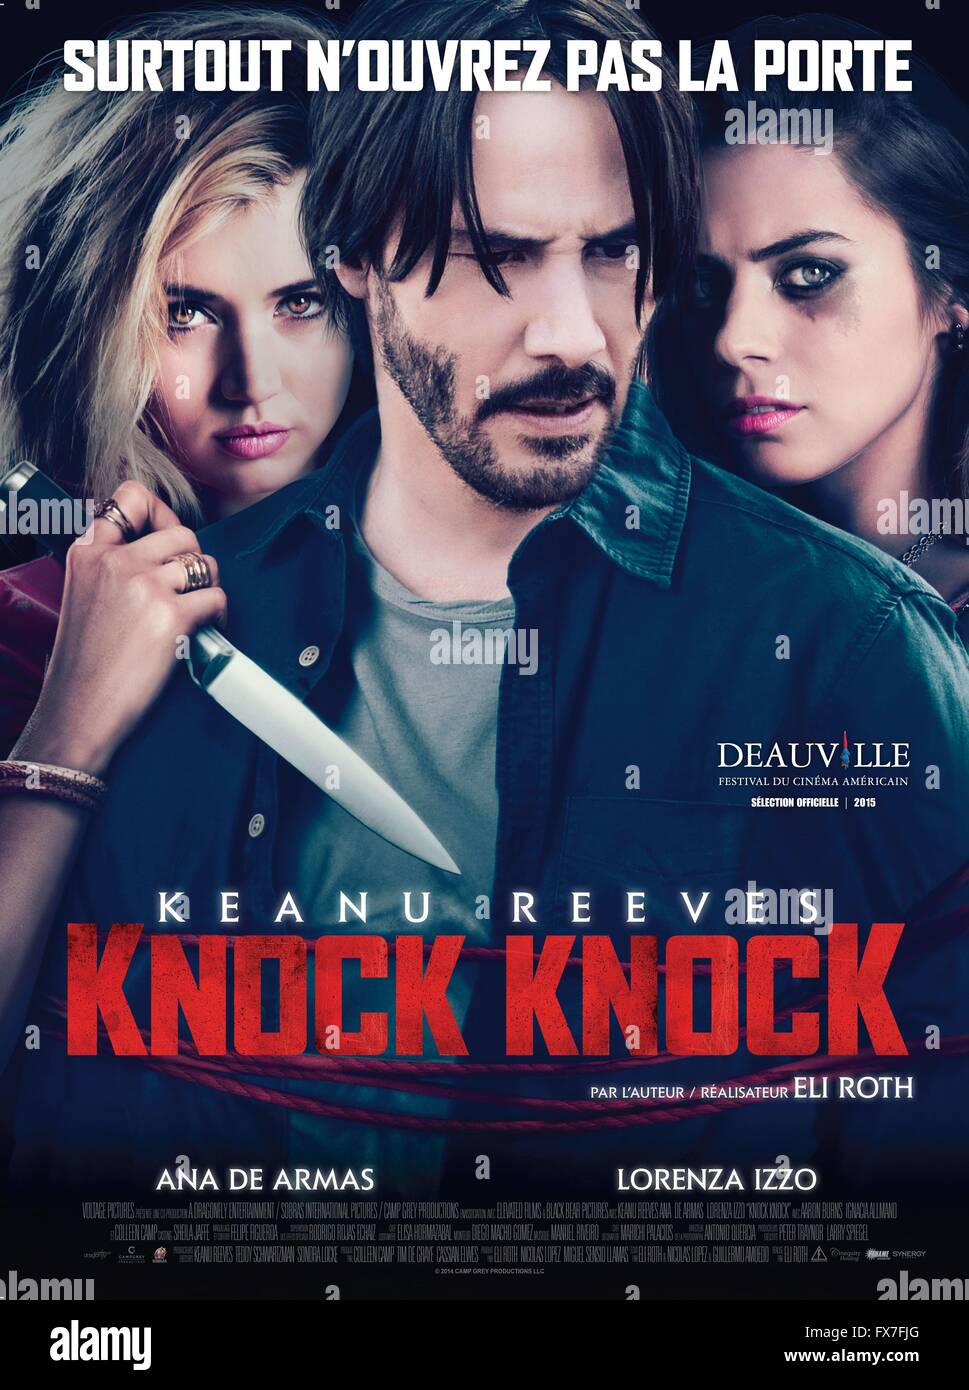 knock knock film